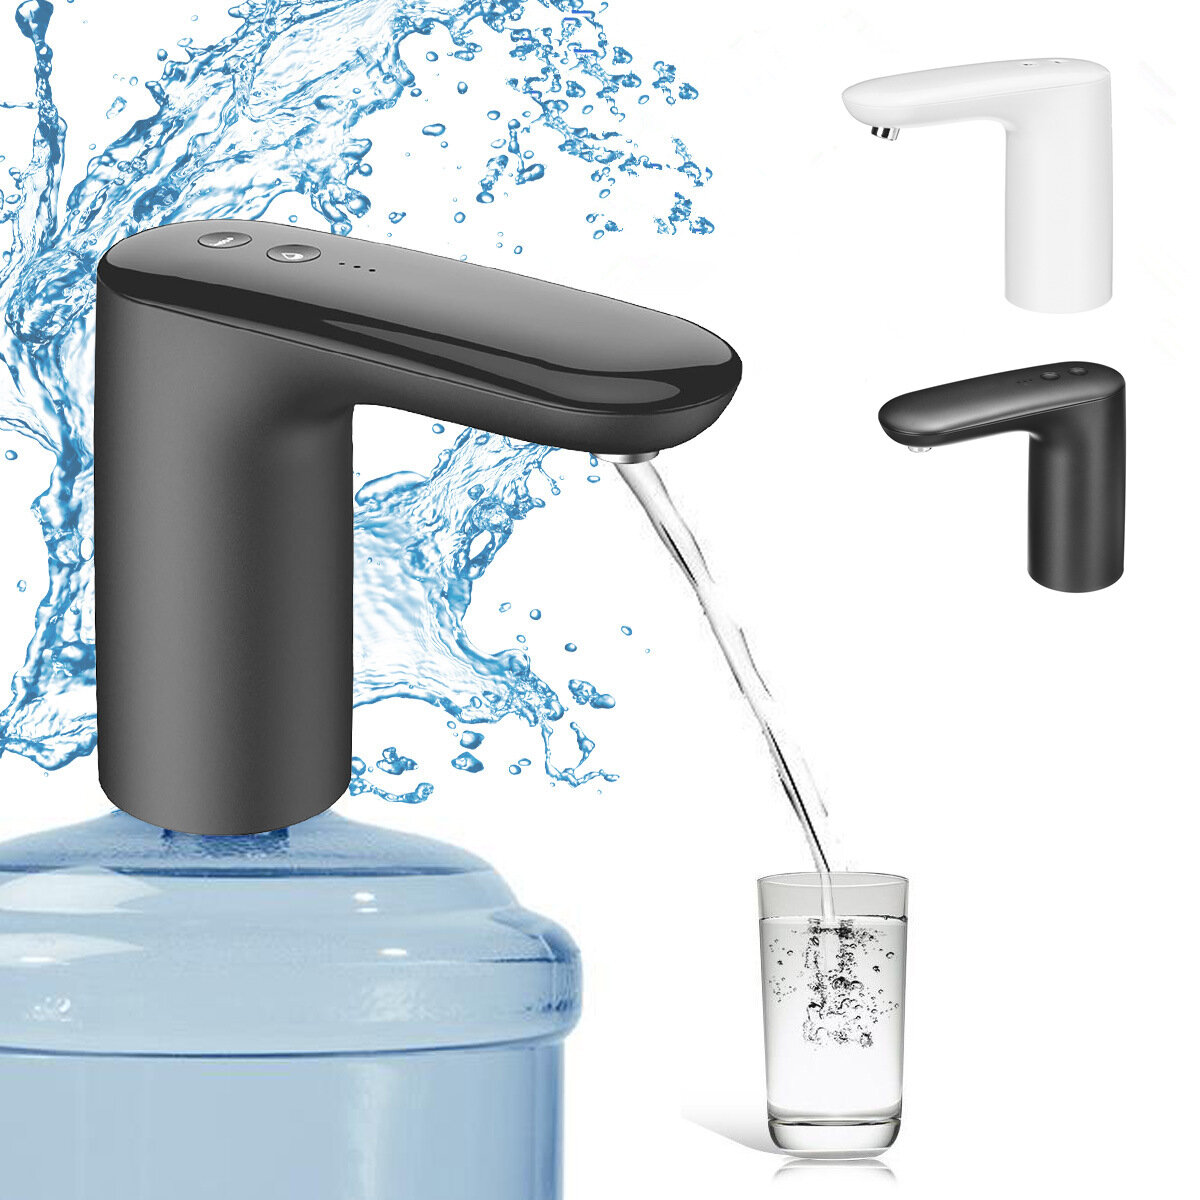 Автоматический электрический насос для воды Smart Water Pump для кемпинга, пикника, галлонов, бутылок для питья, переключатель водоочистки.